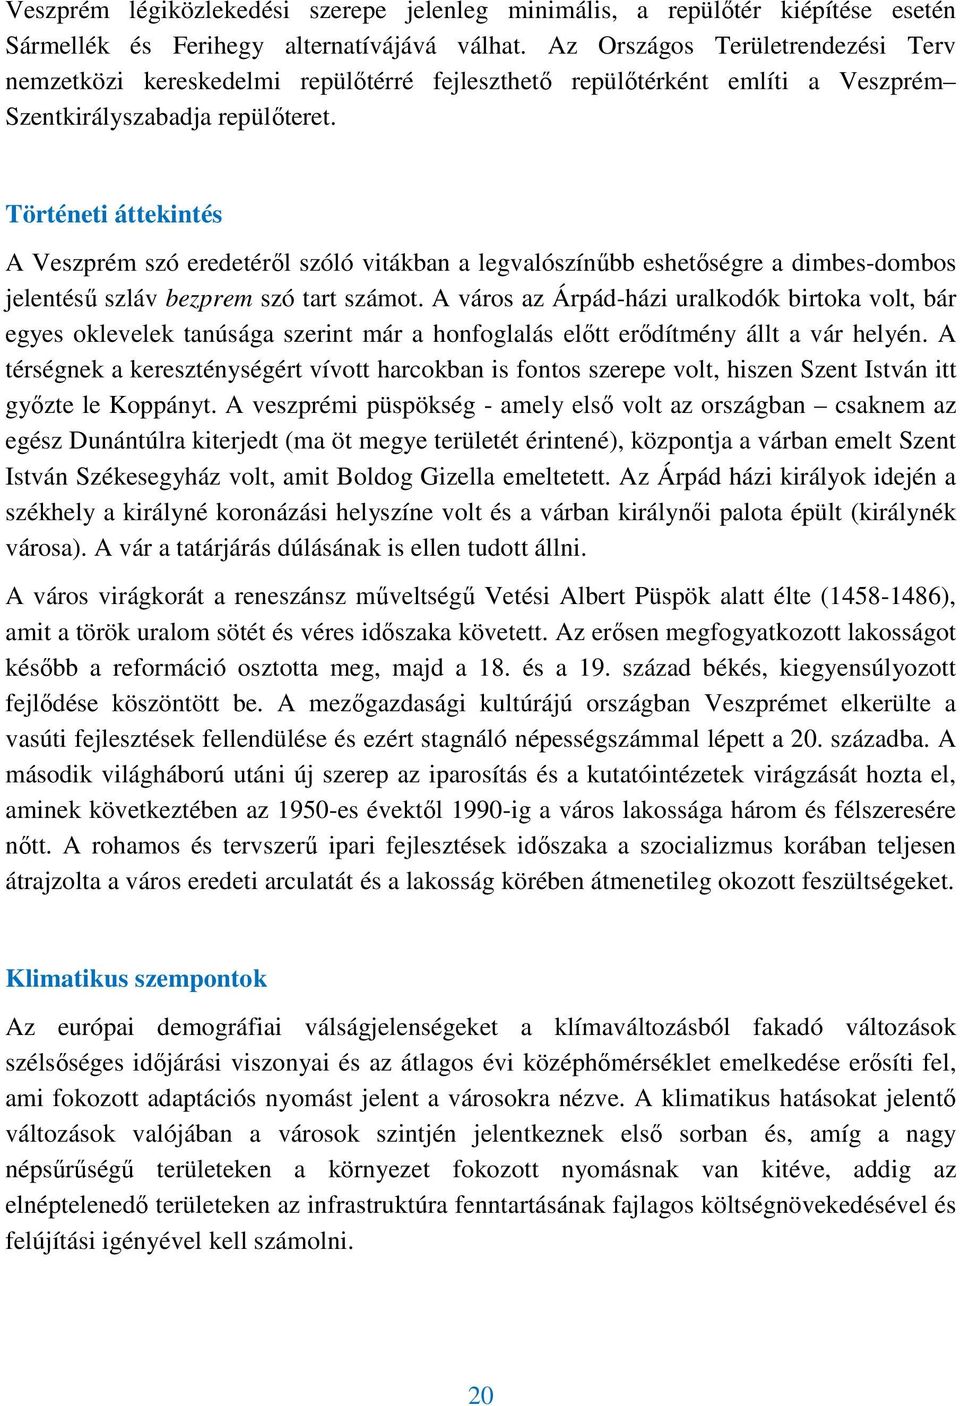 Történeti áttekintés A Veszprém szó eredetérıl szóló vitákban a legvalószínőbb eshetıségre a dimbes-dombos jelentéső szláv bezprem szó tart számot.